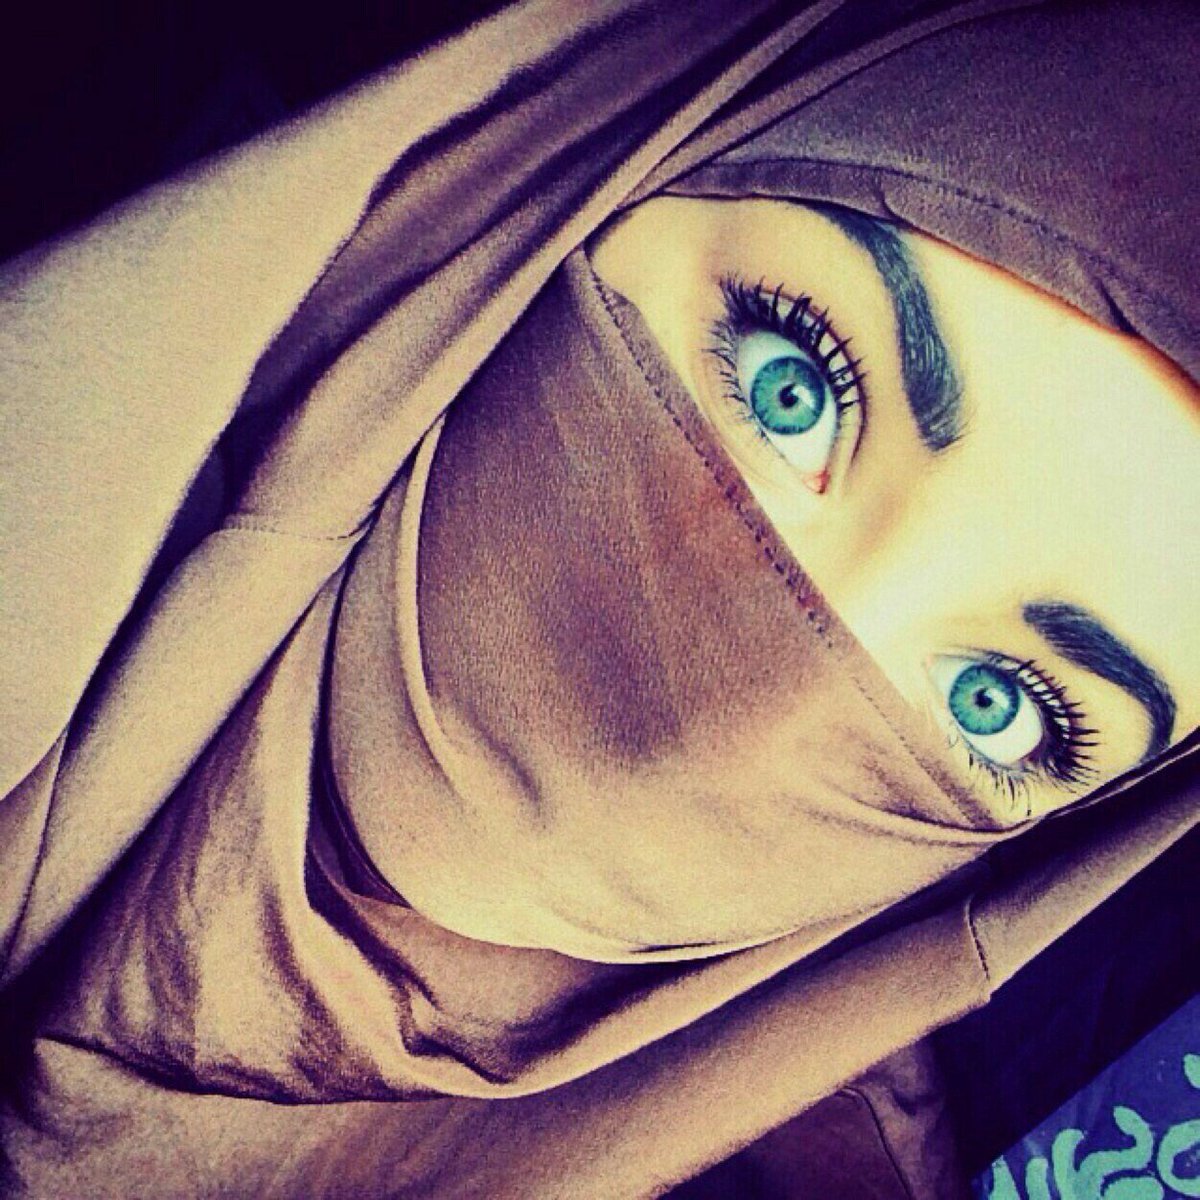 Фото на аву в хиджабе